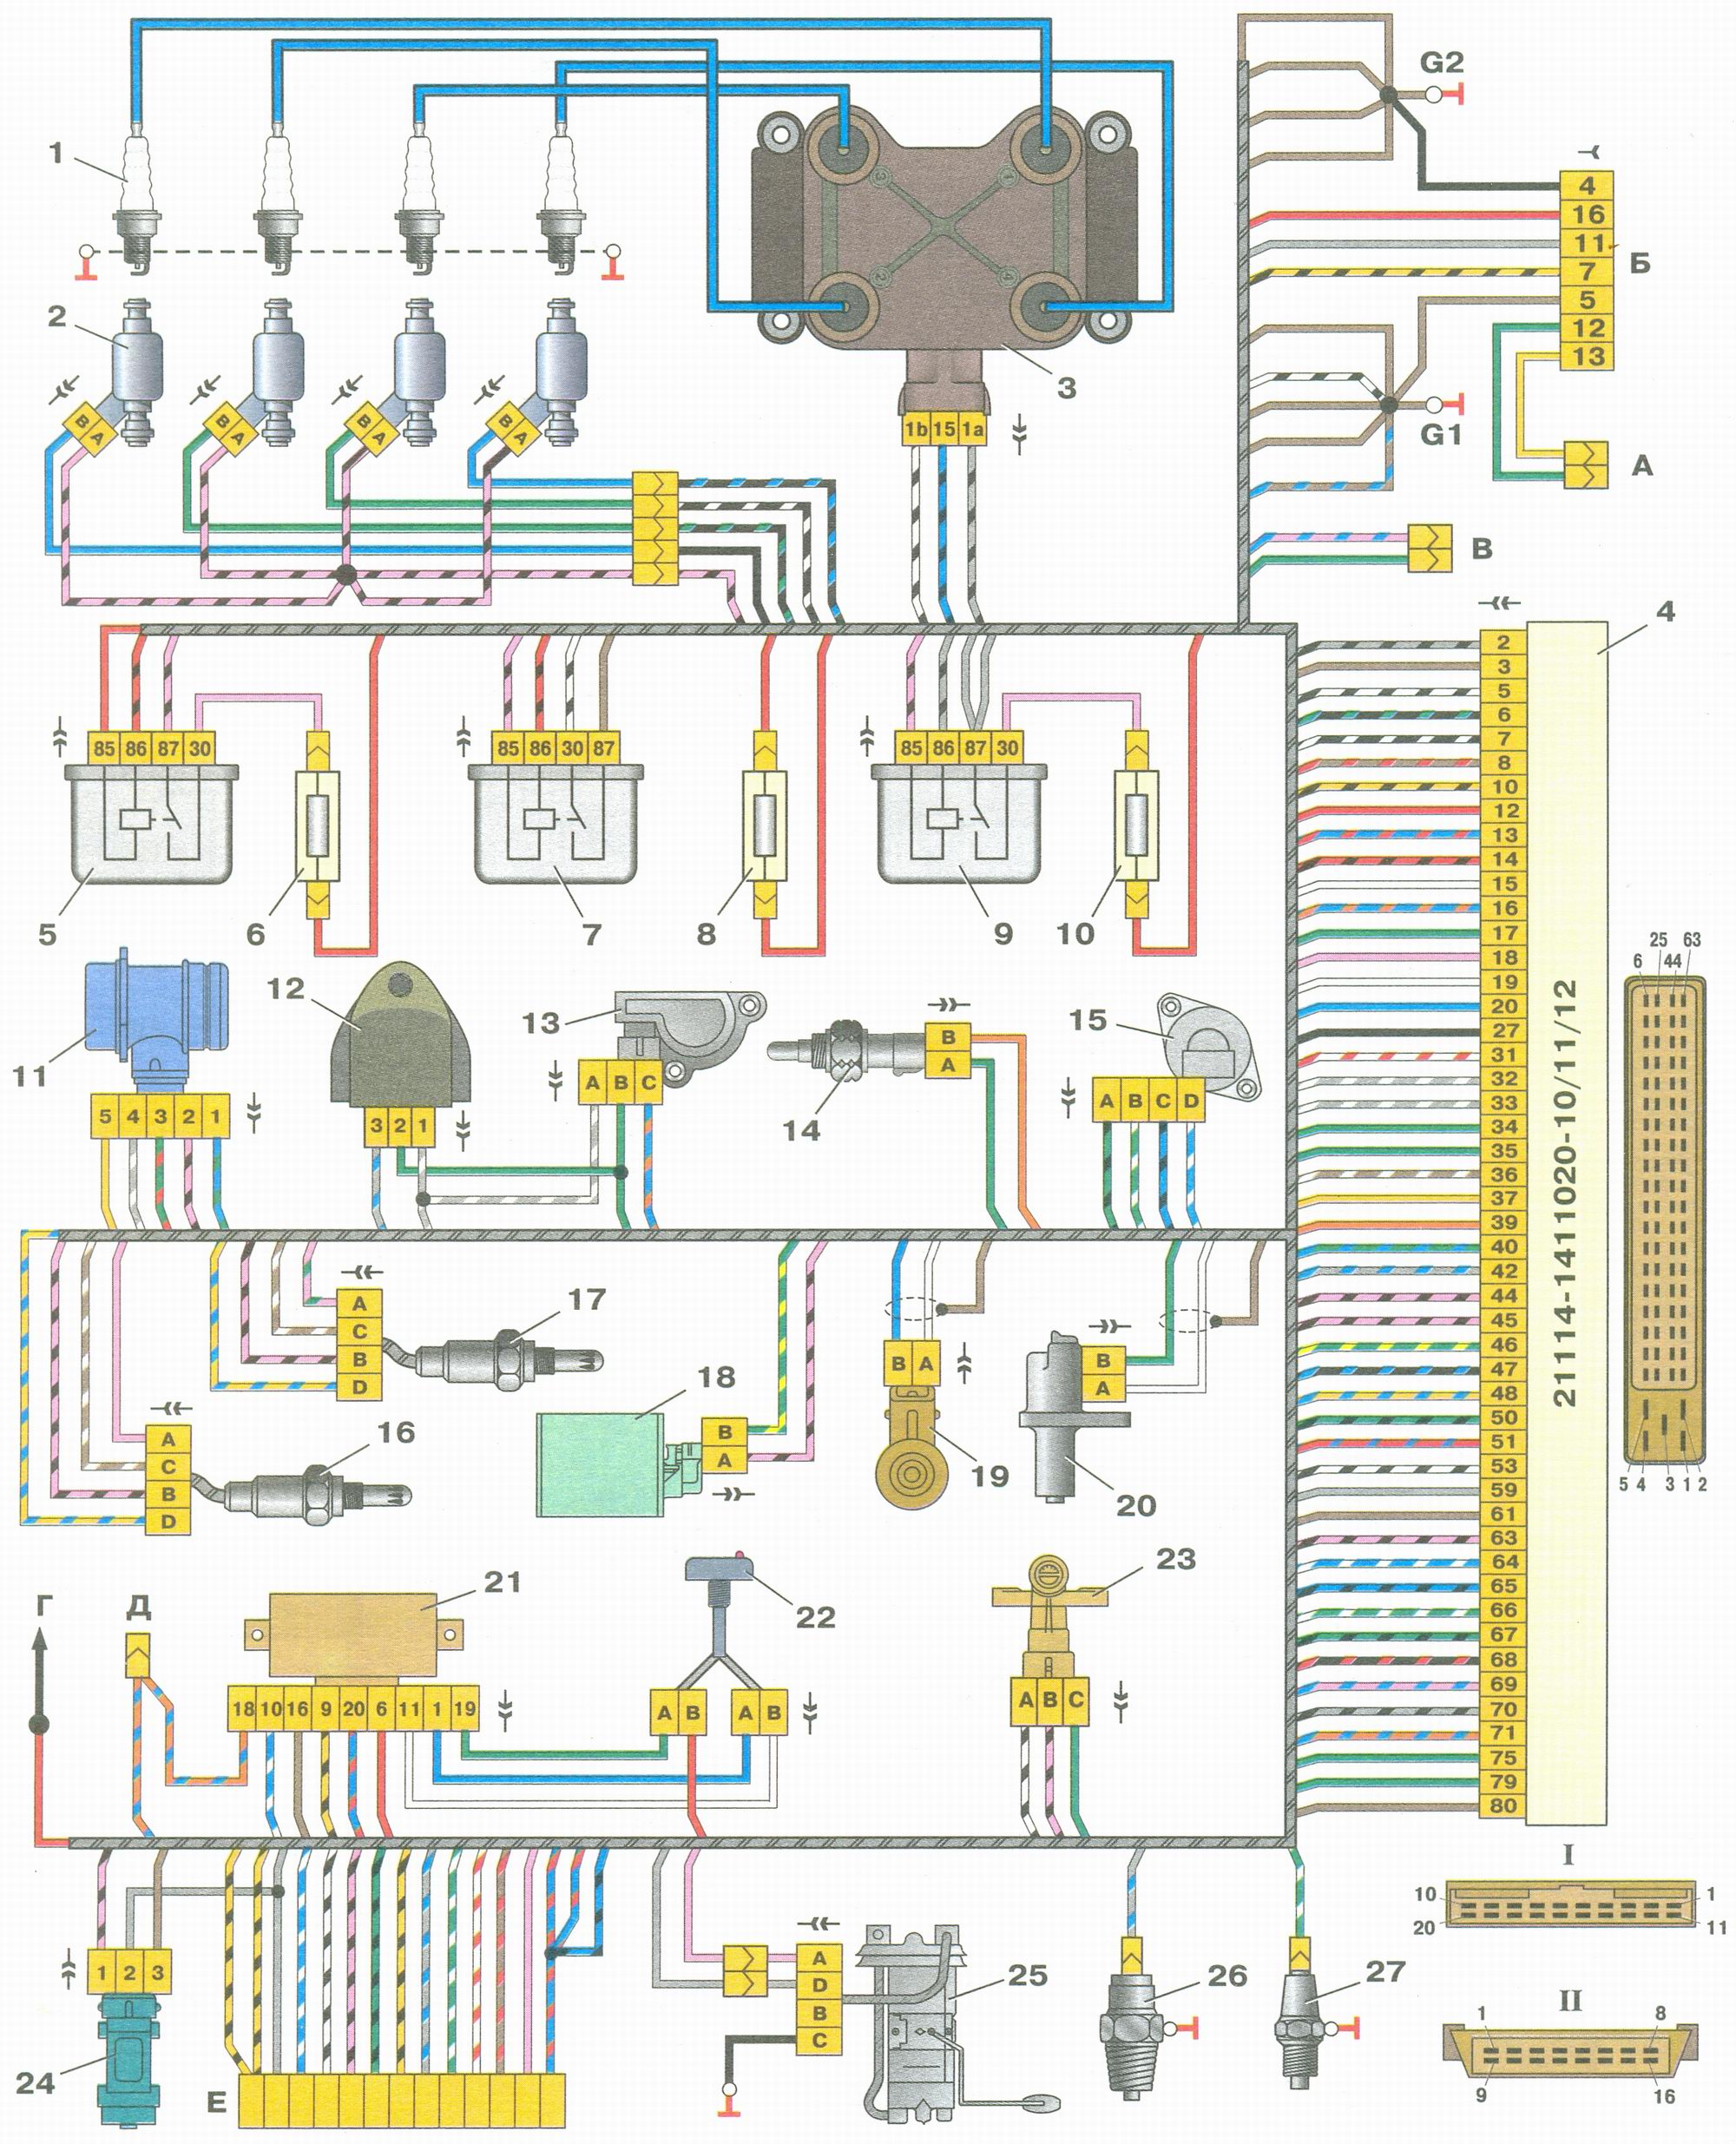 Схема соединений системы управления двигателем под нормы токсичности Евро-3 ВАЗ (Lada) Kalina 1118